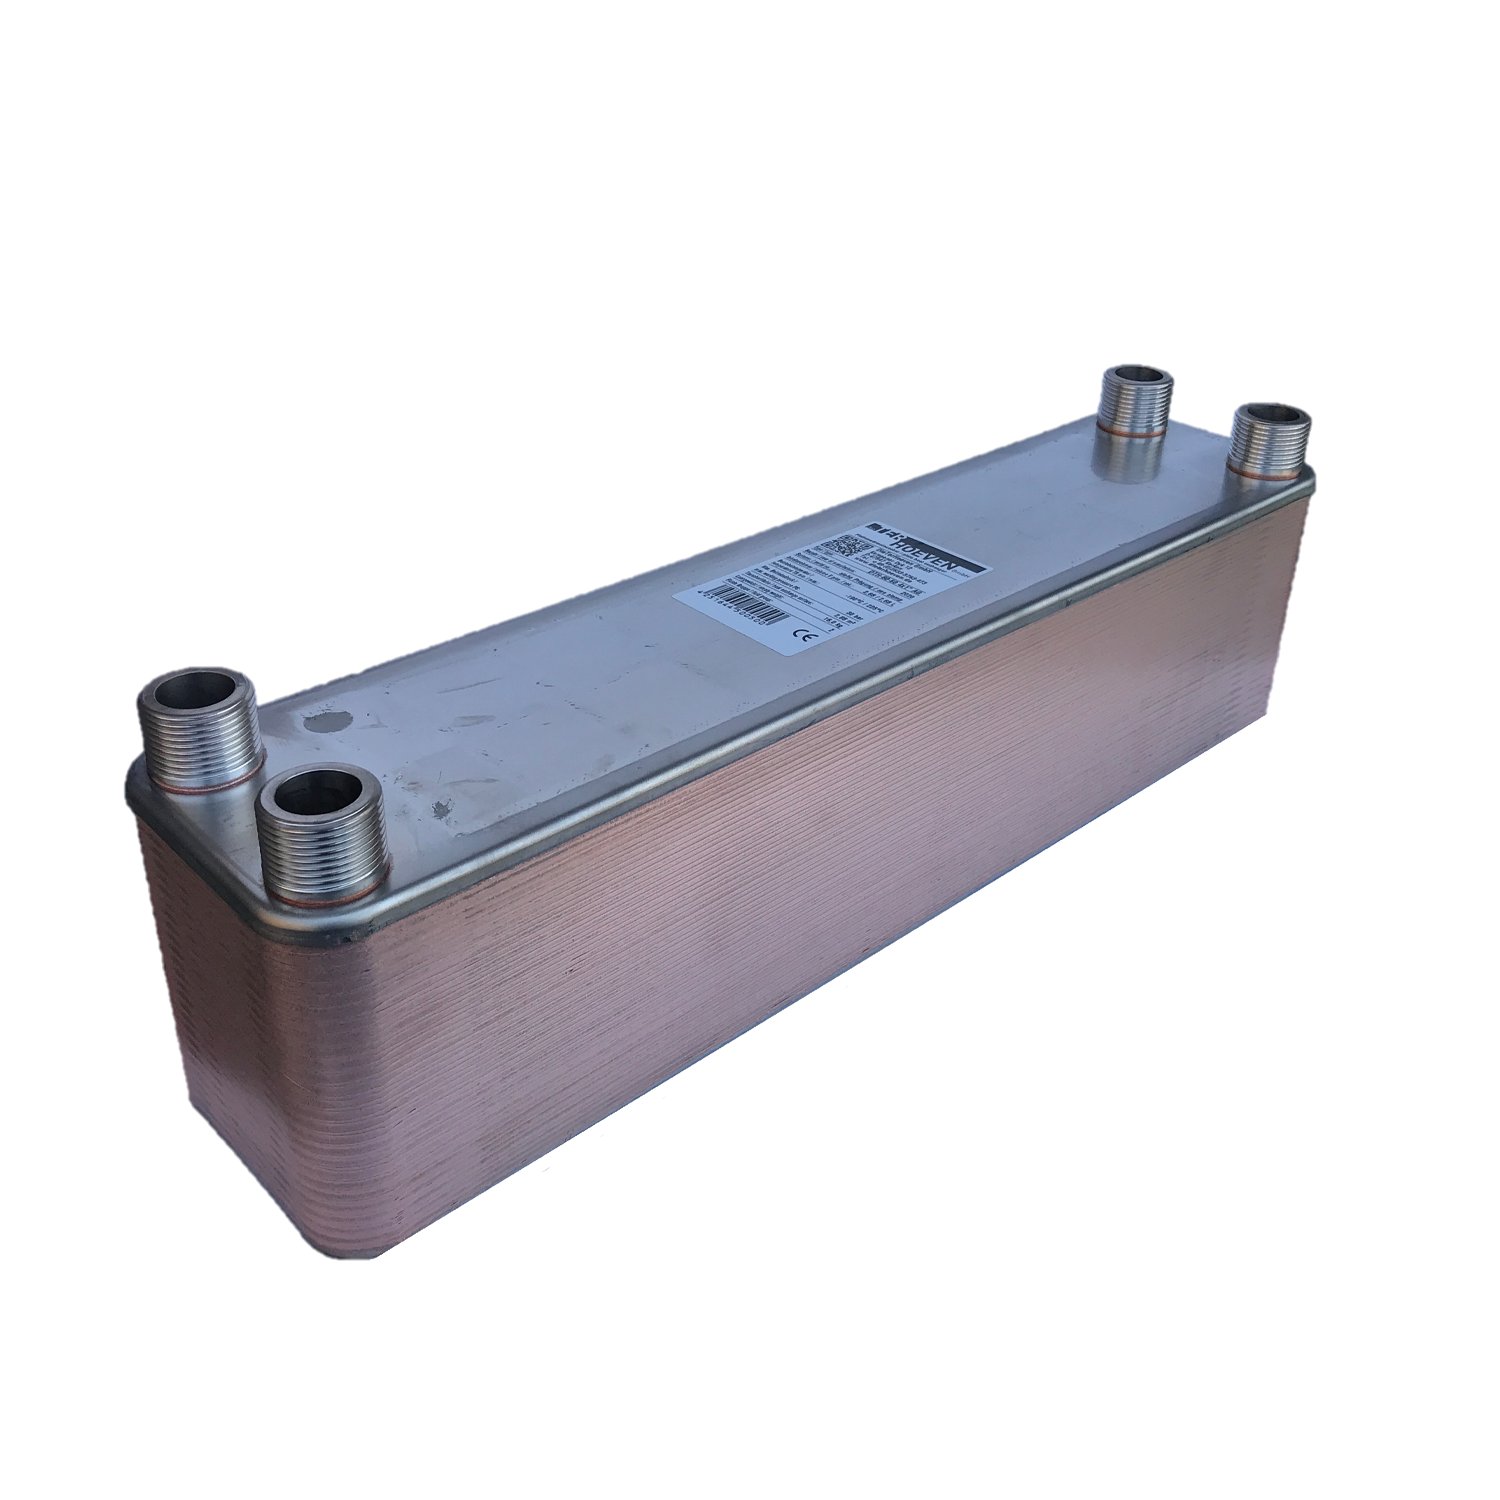 Intercambiador de calor de placas soldadas de cobre; 80 placas DTH-60-80 4x1" ET